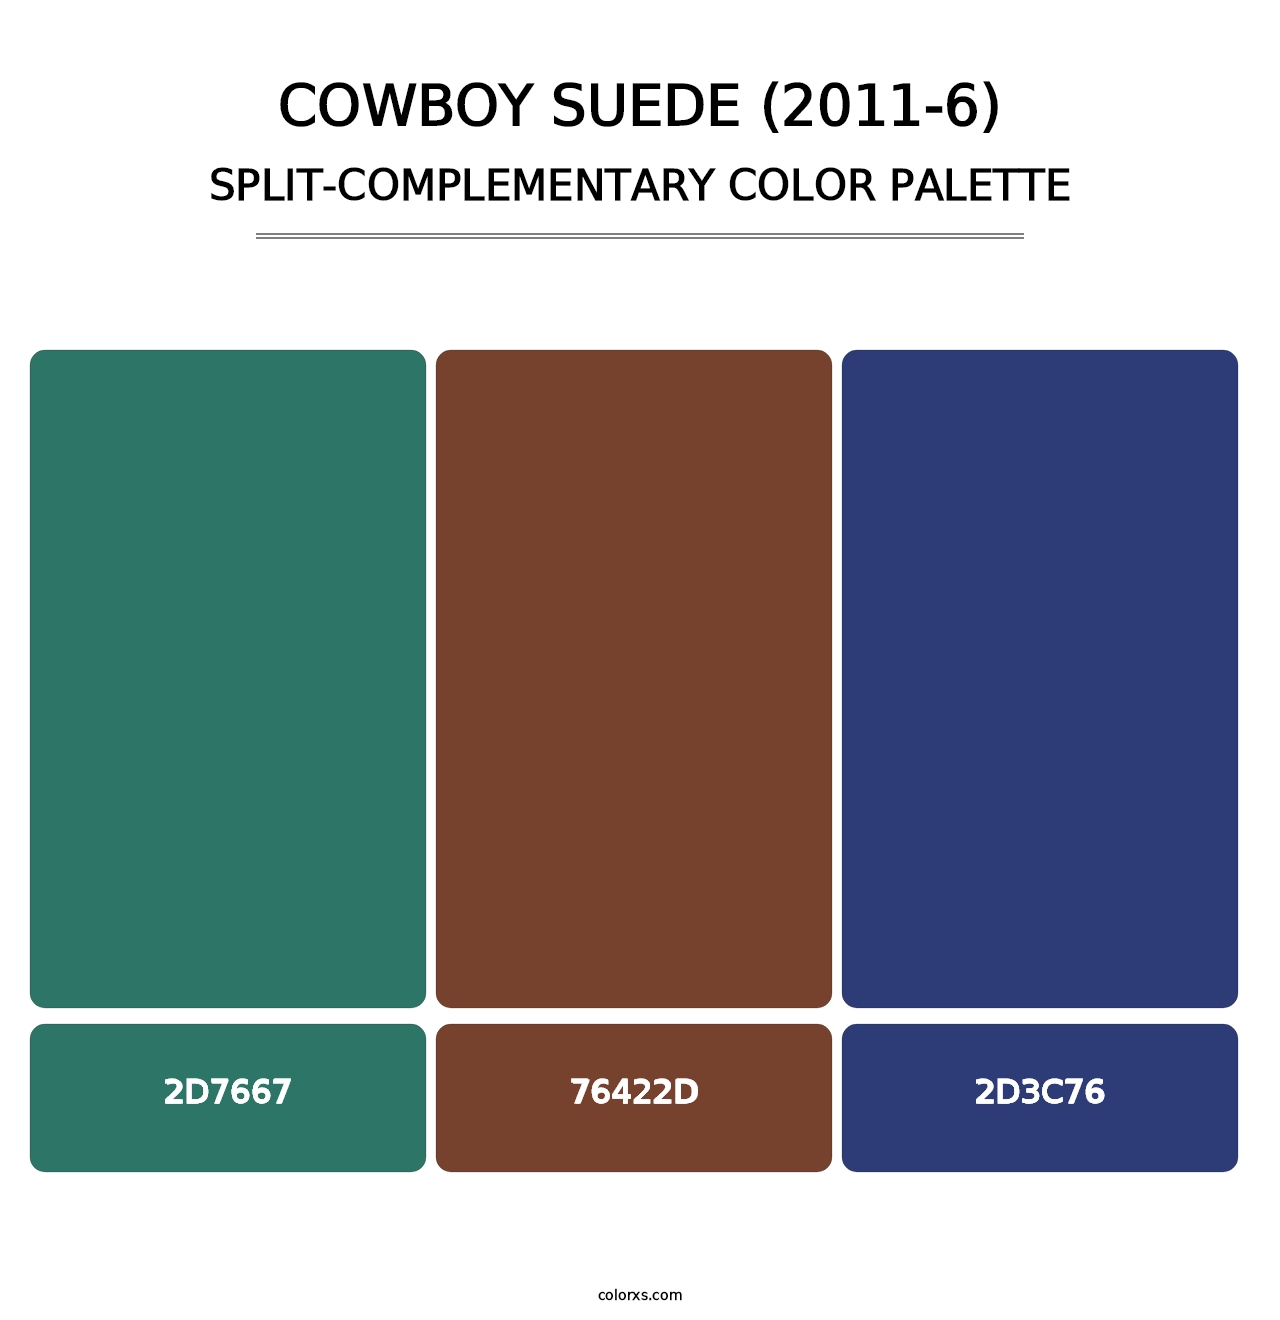 Cowboy Suede (2011-6) - Split-Complementary Color Palette